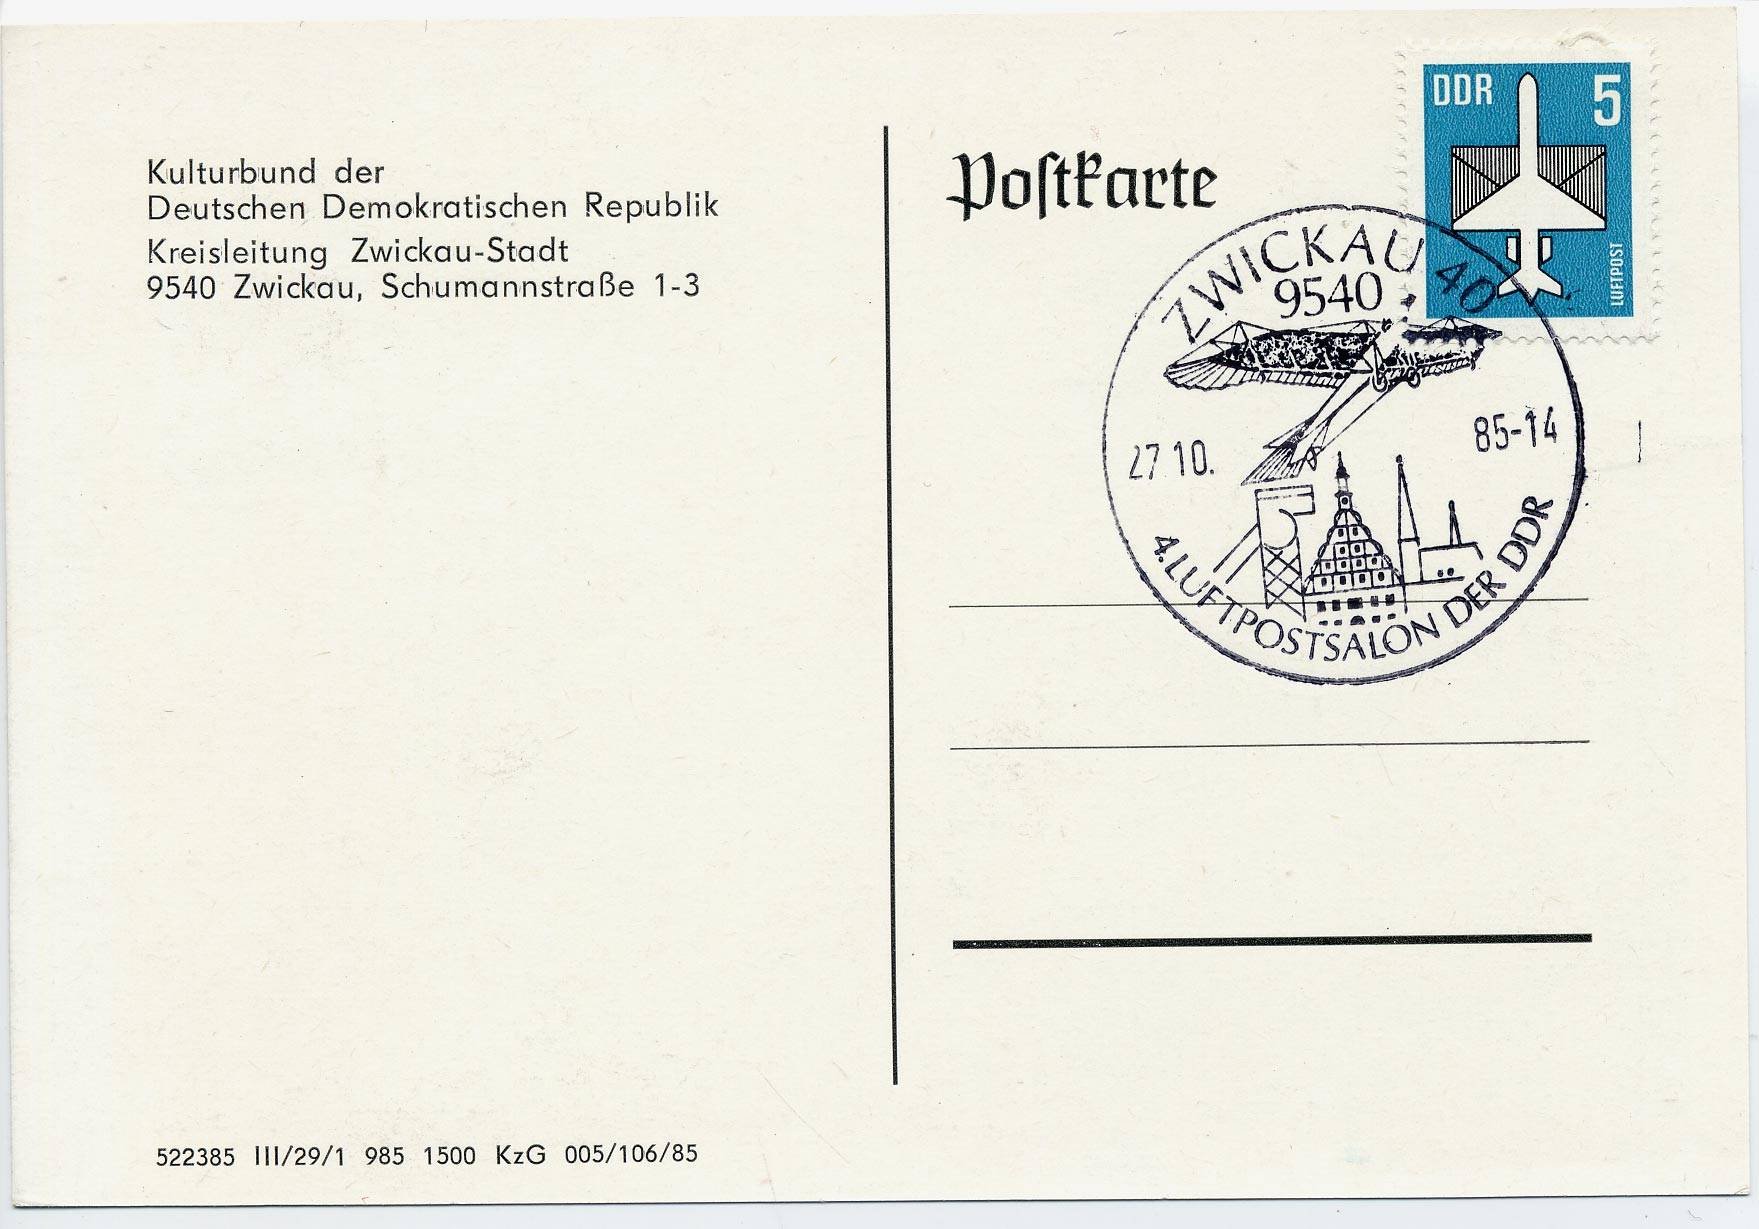 Ansichtskarte (Reprint) "Flieger in Zwickau" mit Sonderstempel Zwickau 40 "4. Luftpostsalon der DDR" 27.10.1985 (Verkehrsmuseum Dresden CC BY-NC-SA)